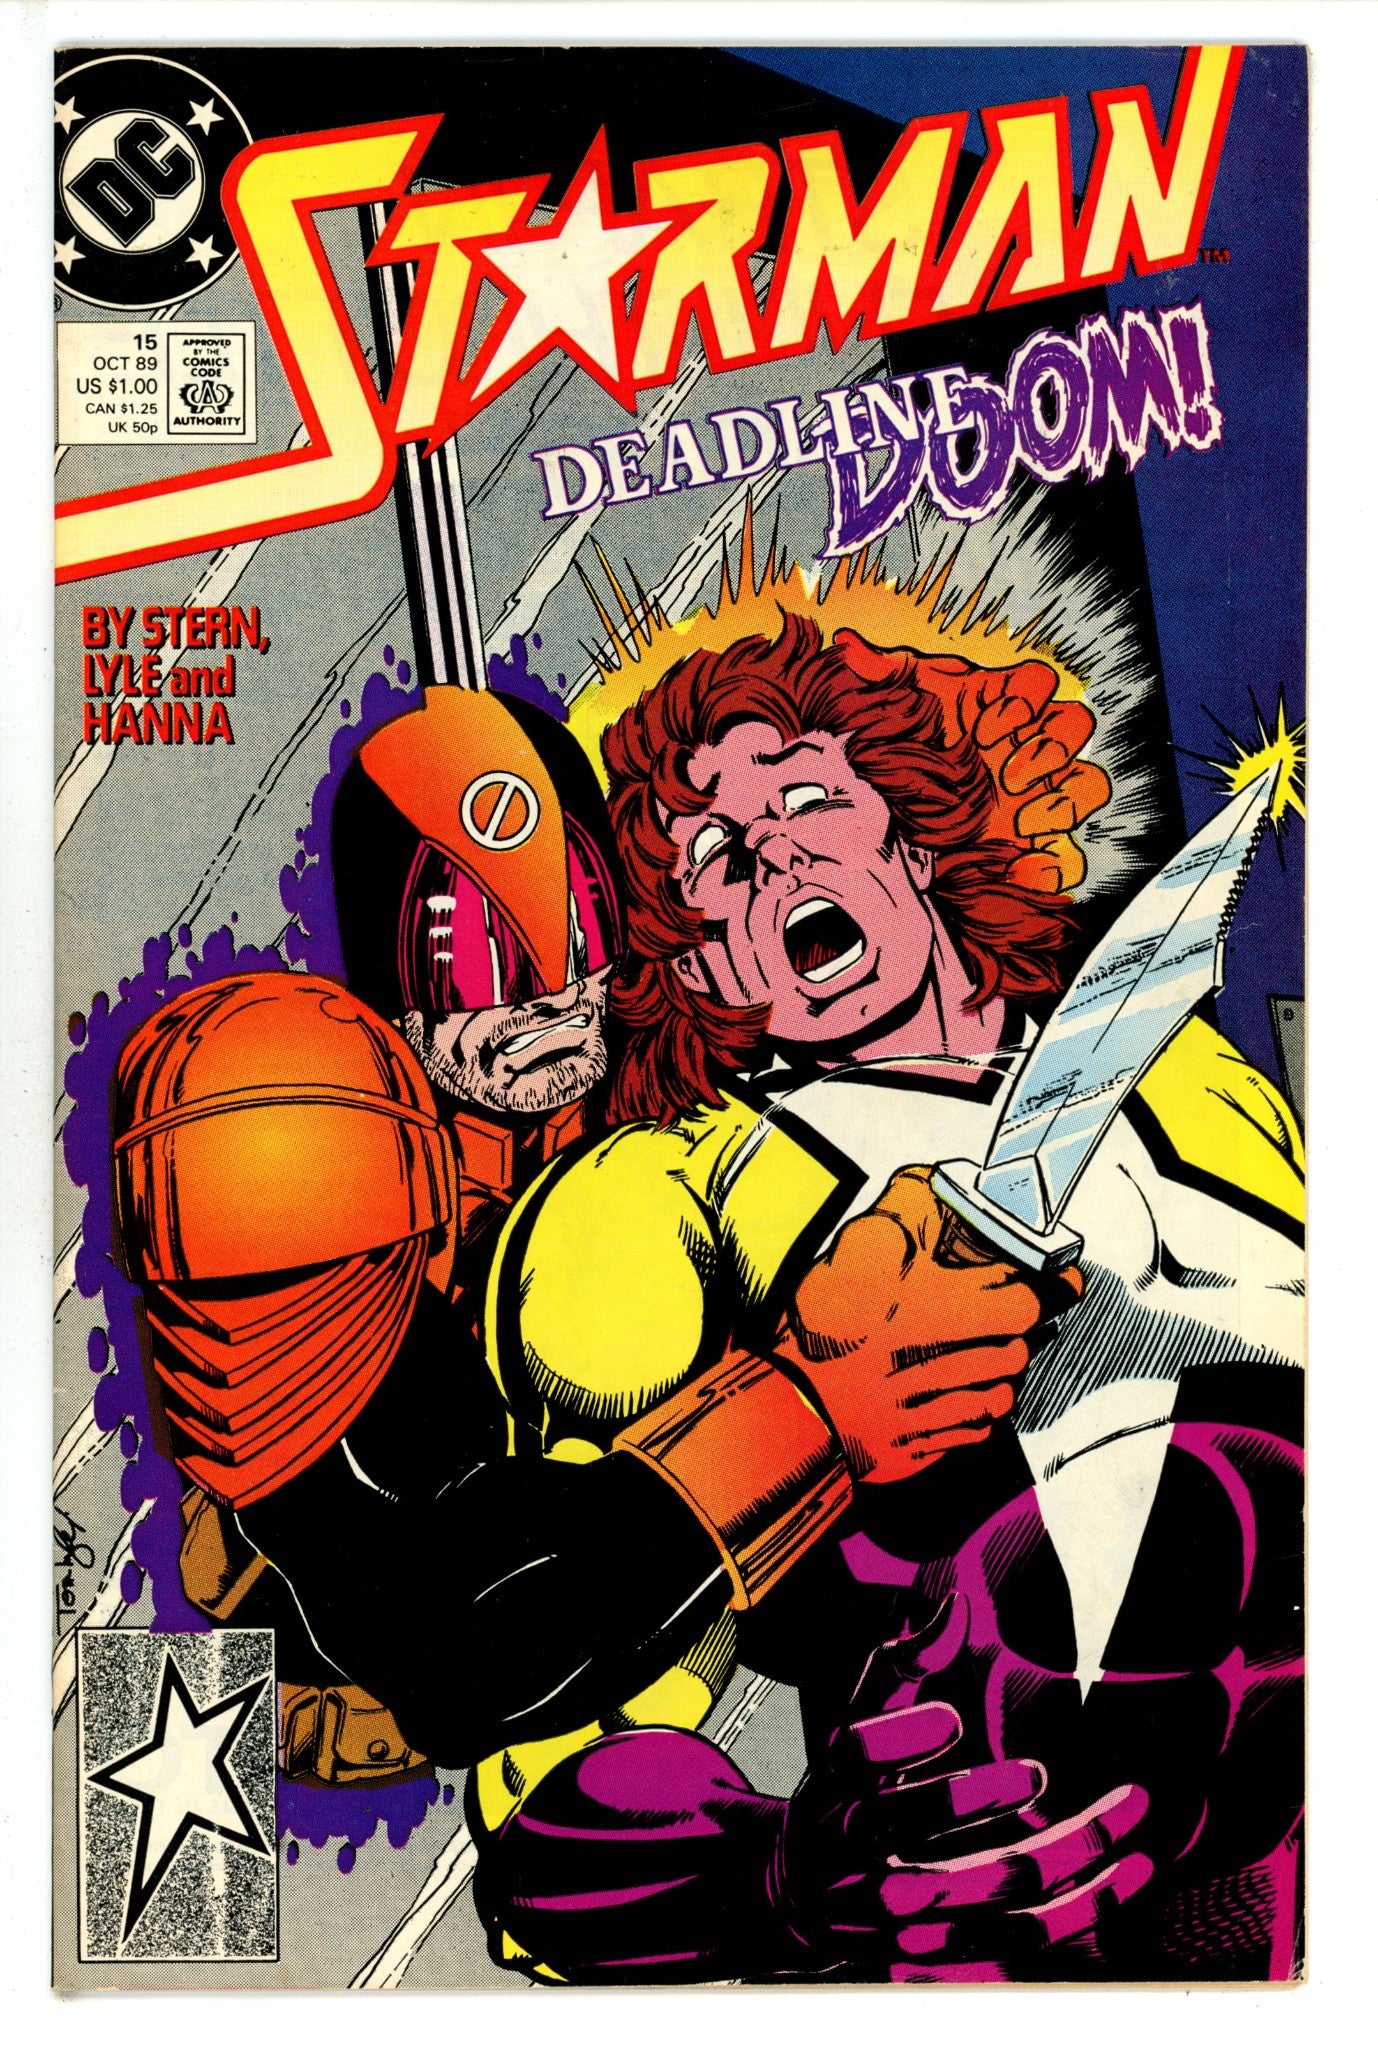 Starman Vol 1 15 (1989)